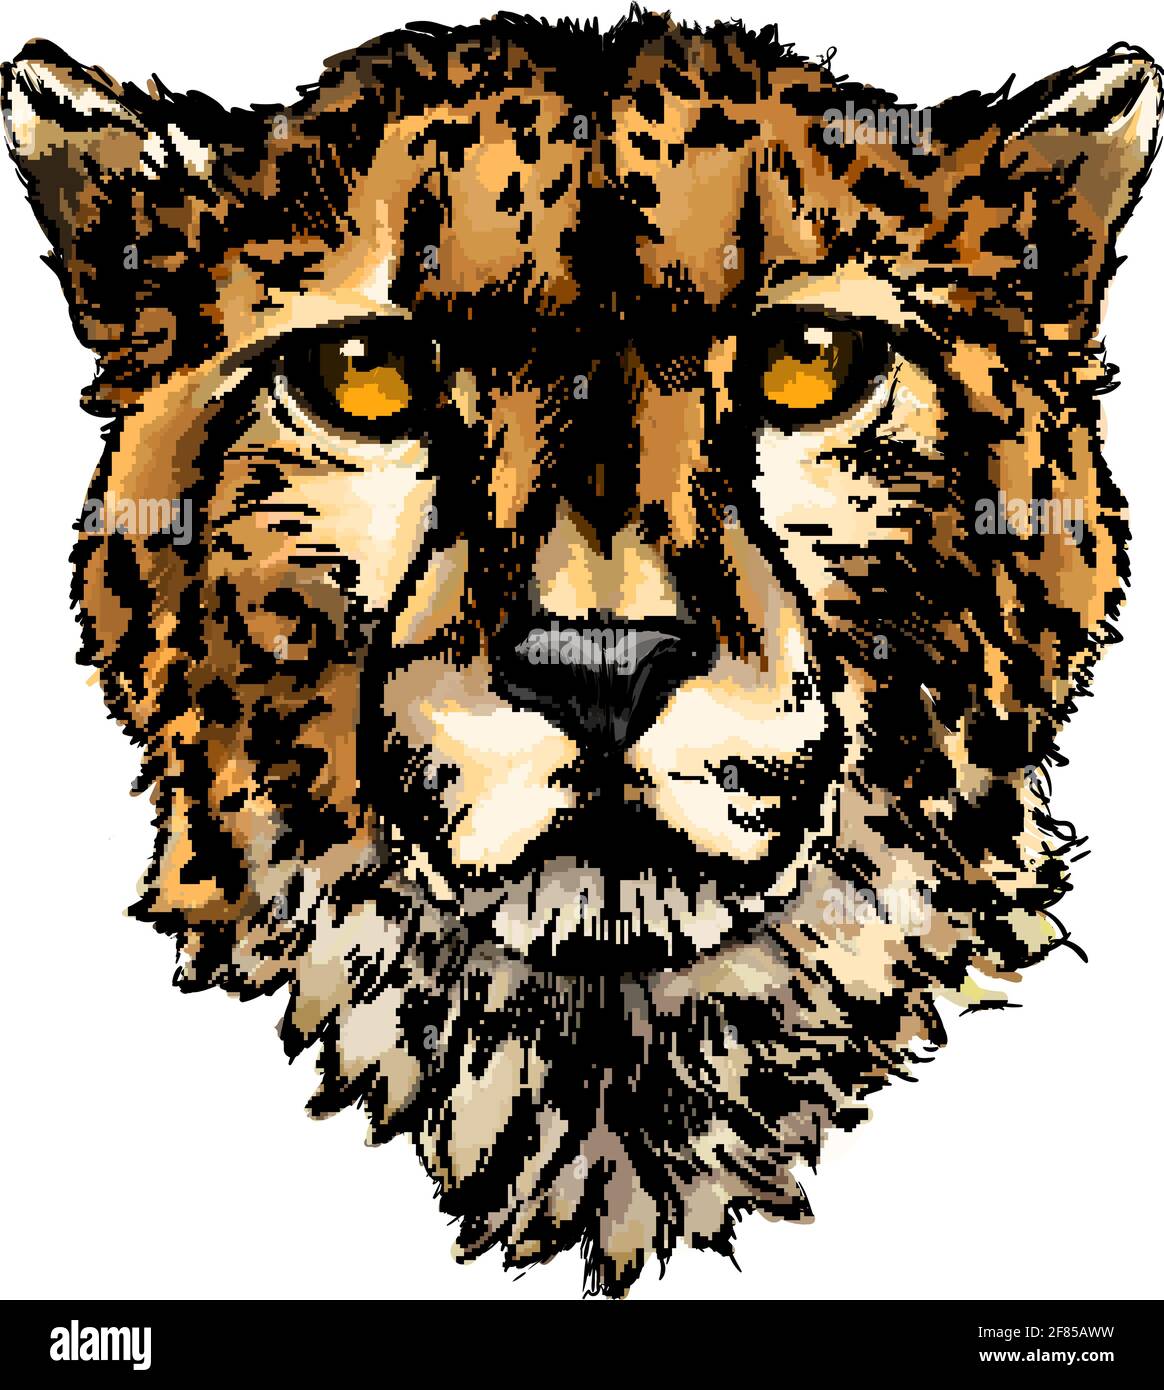 Cheetah Kopf Porträt aus einem Spritzer Aquarell, farbige Zeichnung, realistisch. Vektordarstellung von Farben Stock Vektor